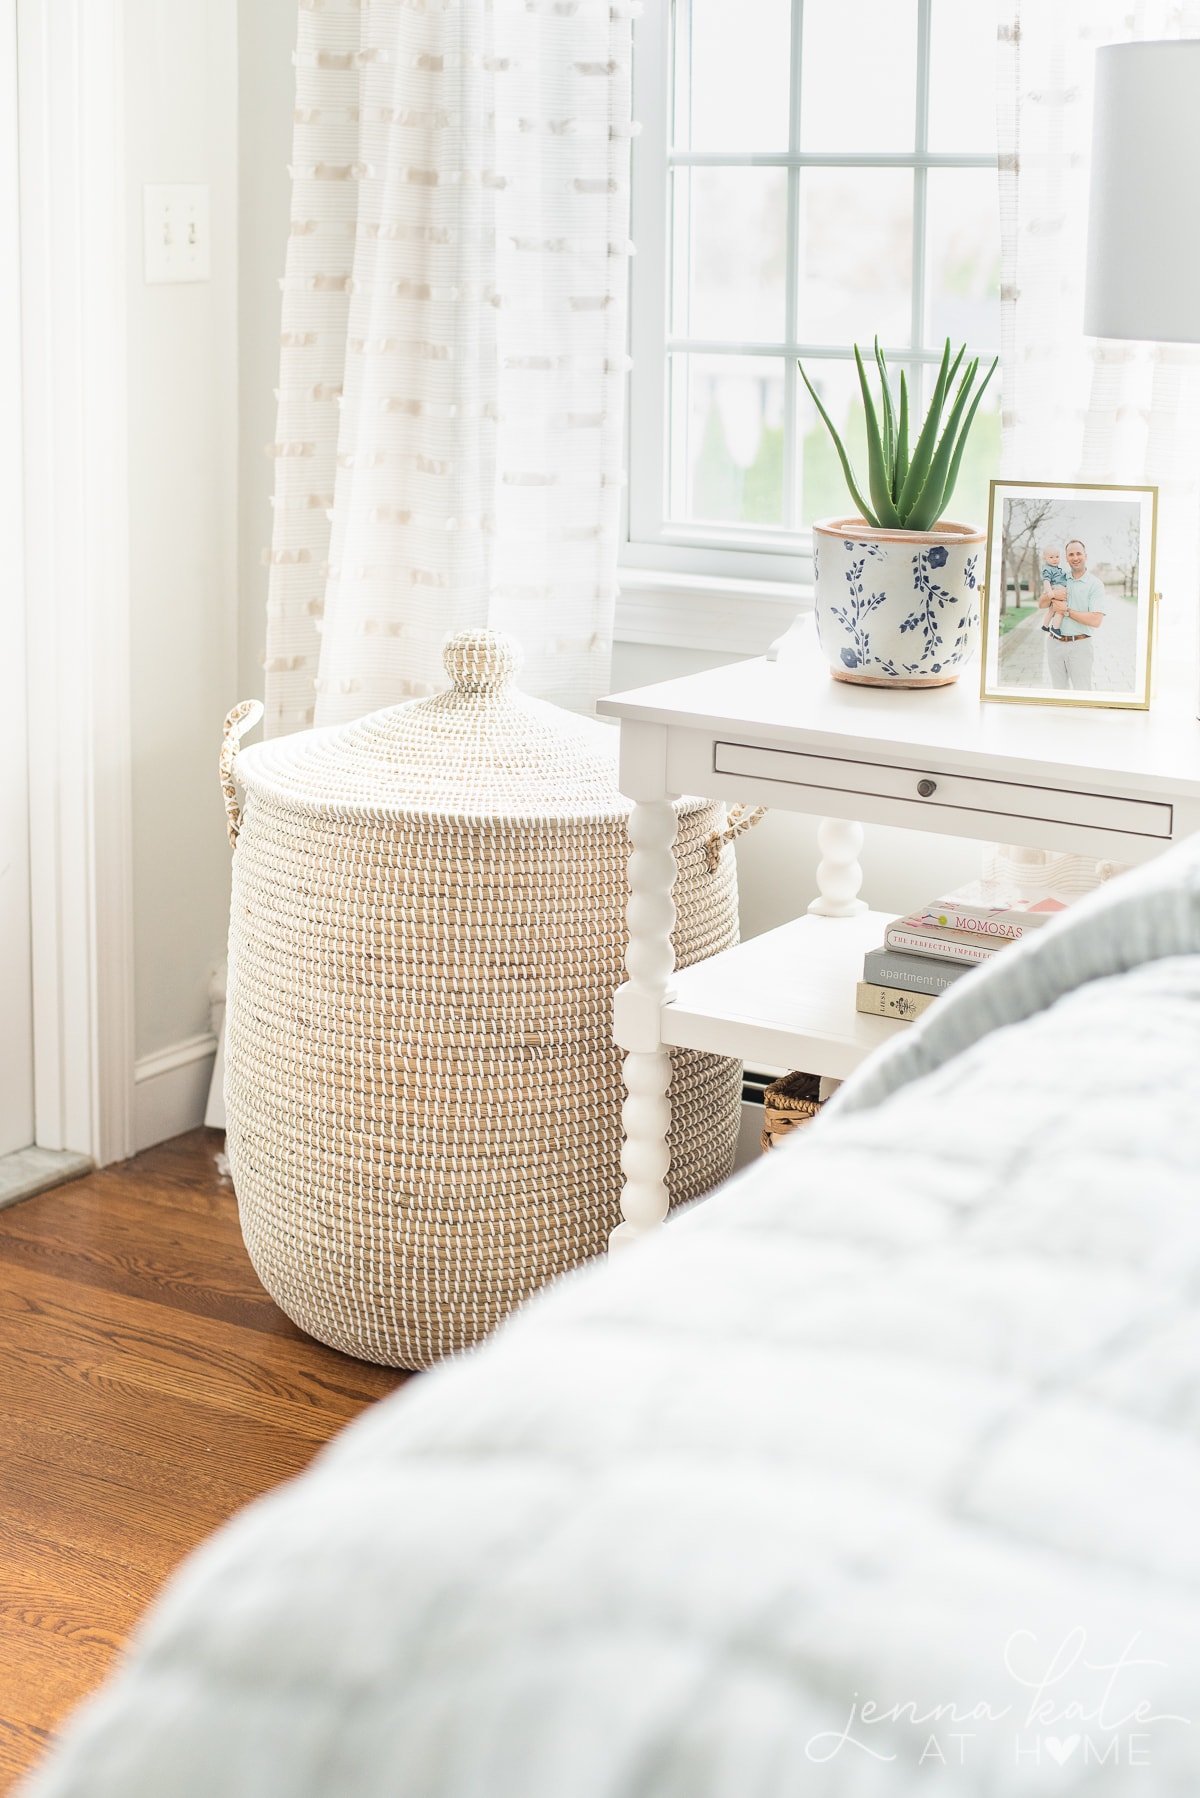 rattan linen basket in the corner of a bedroom